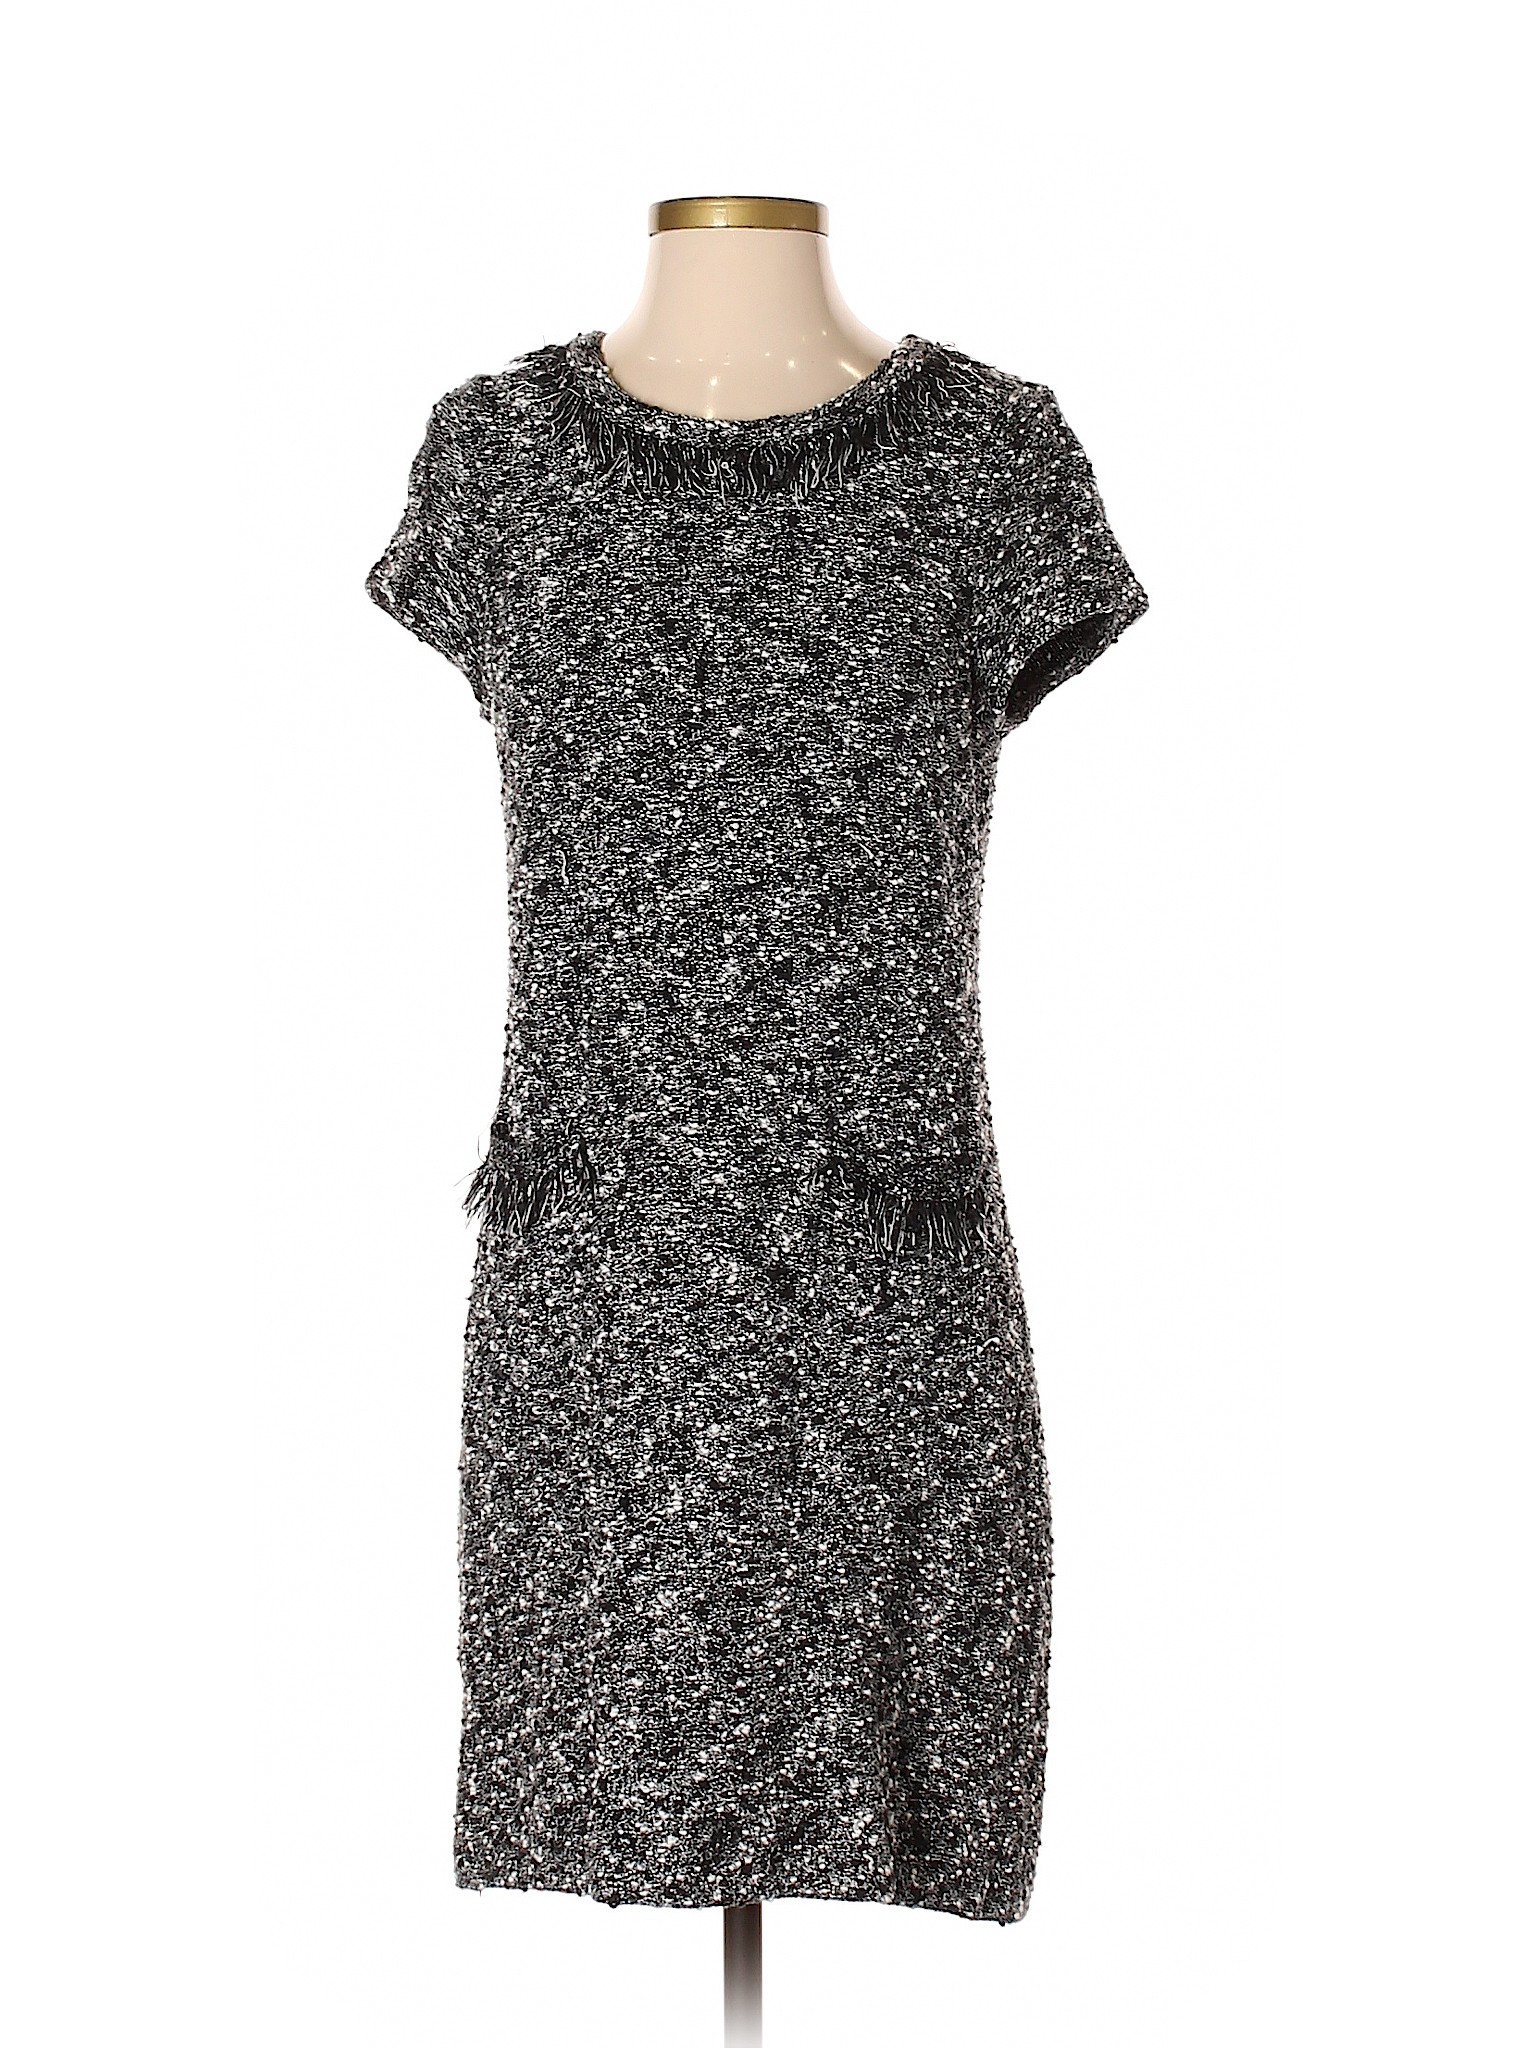 Ann Taylor Women Gray Casual Dress Xs Petite | eBay